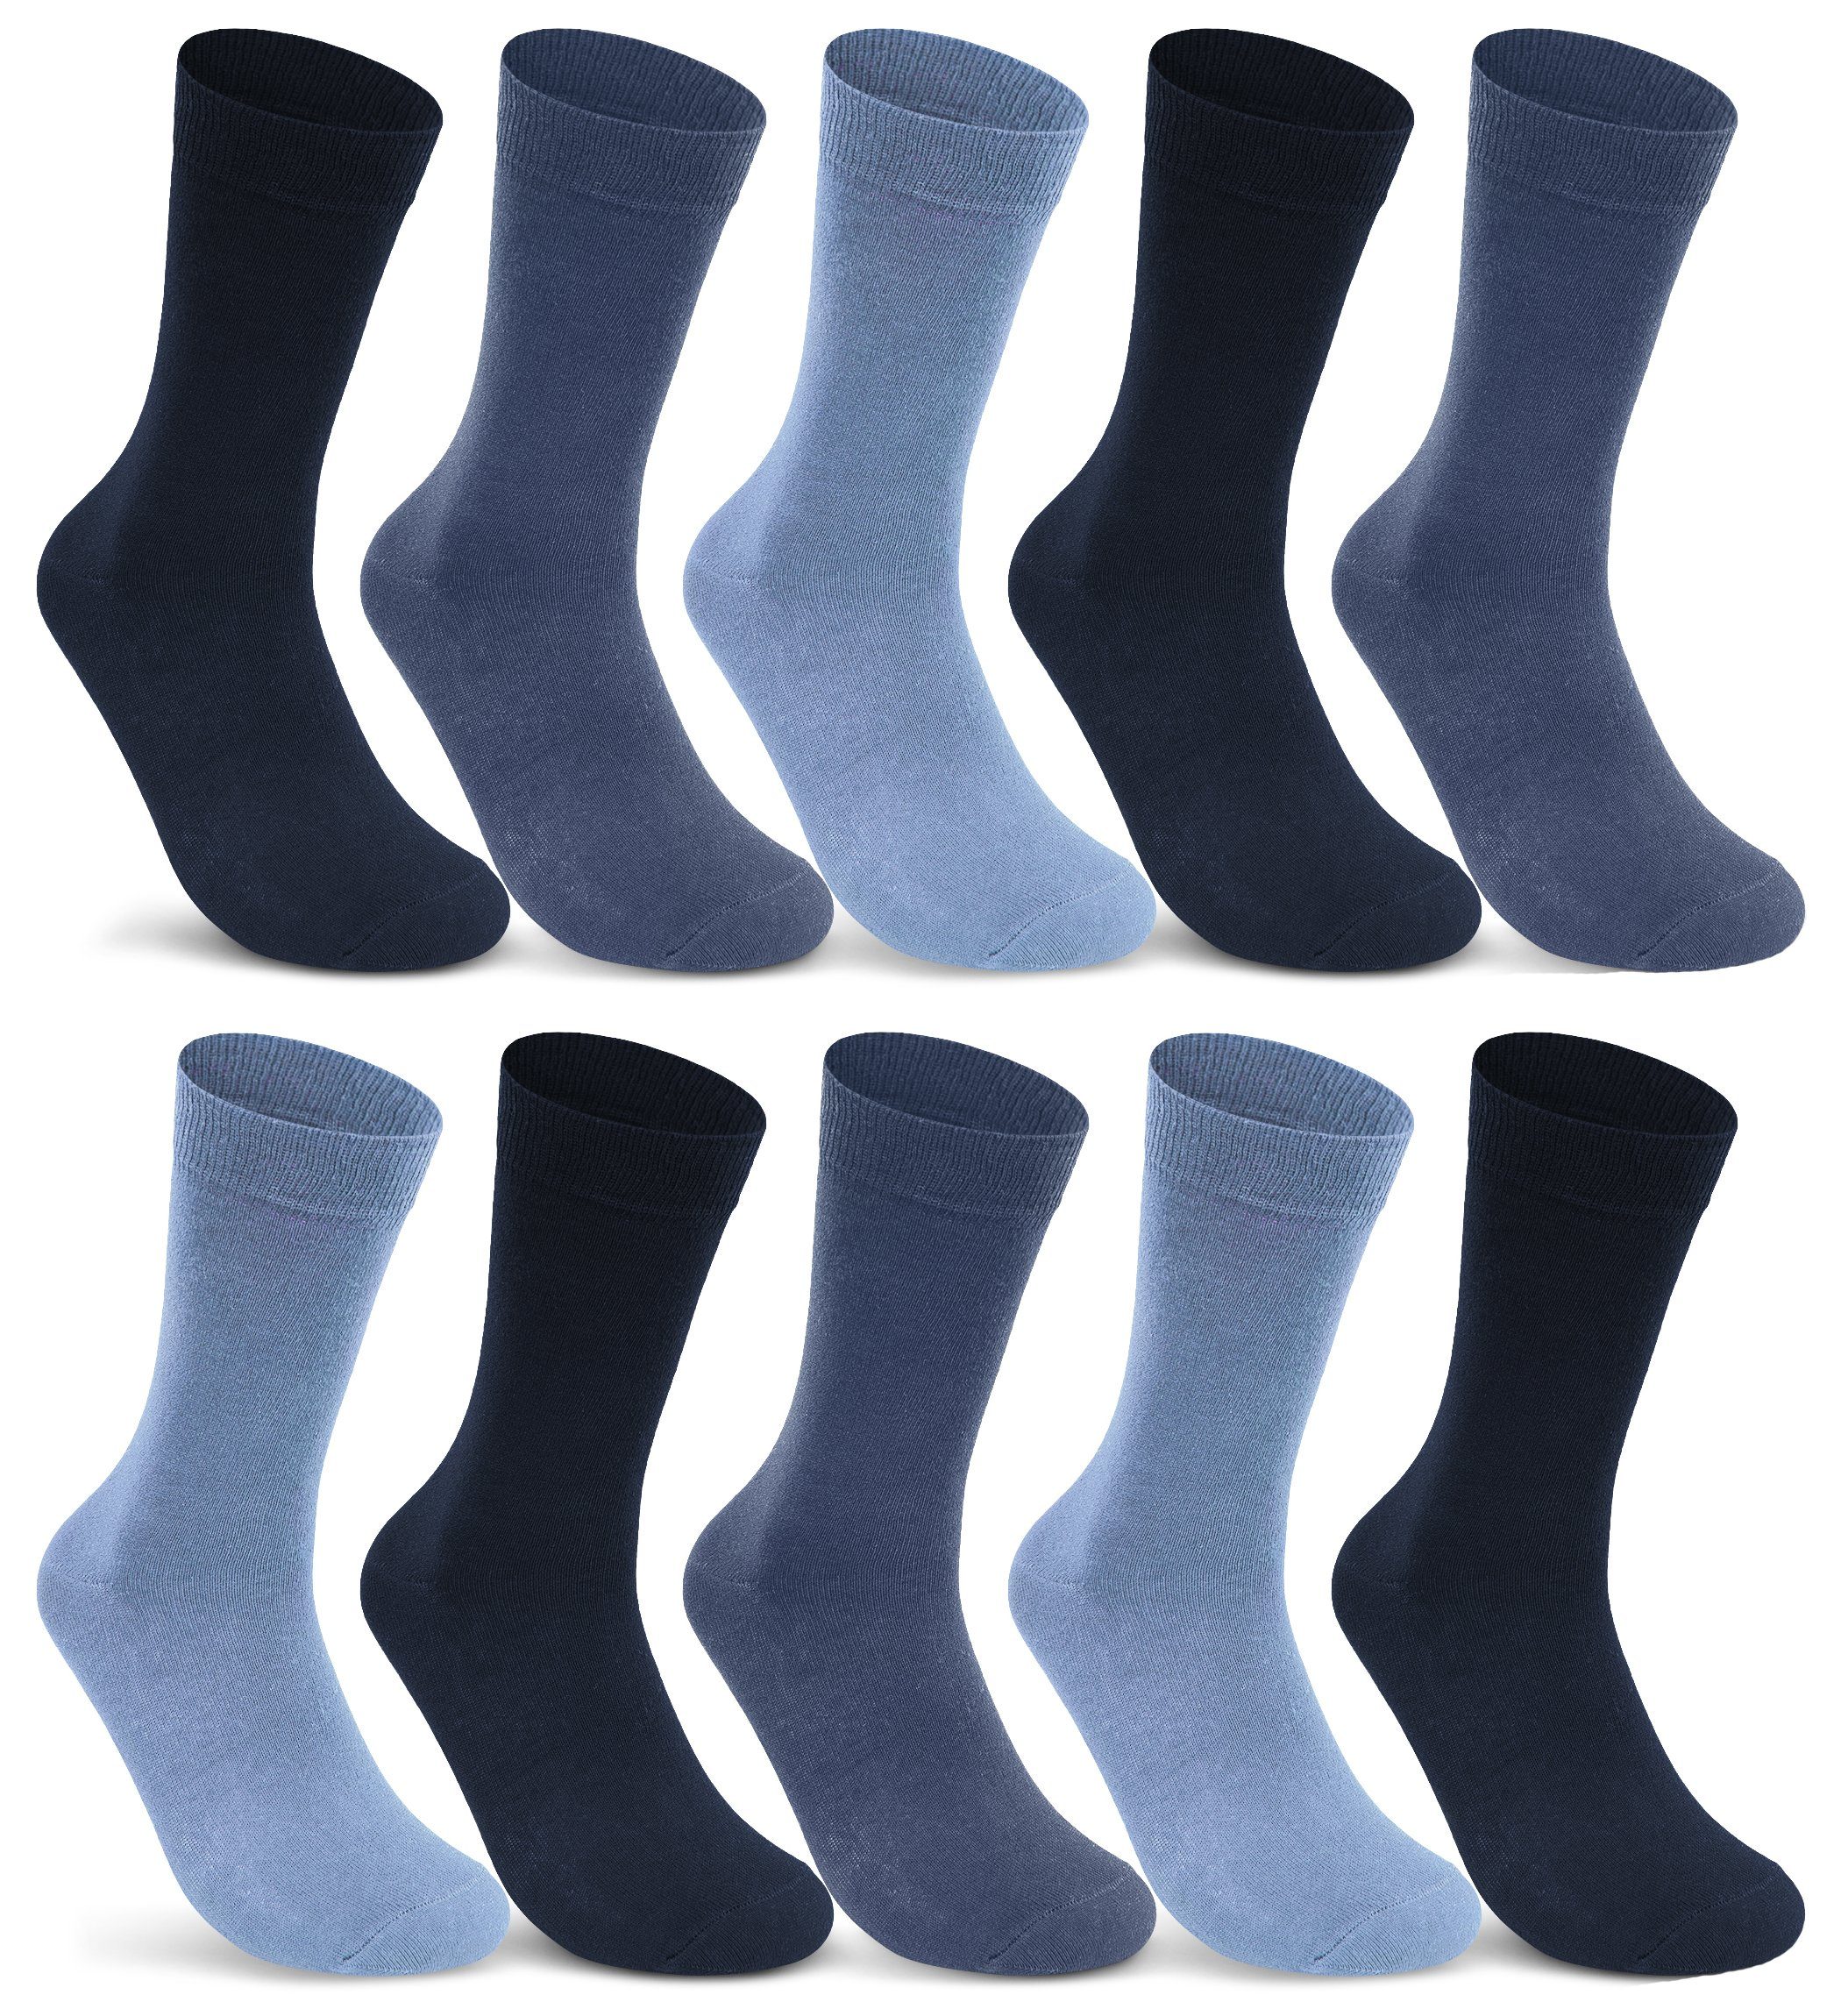 sockenkauf24 Socken 10 I 20 I 30 Paar Damen & Herren Business Socken Baumwolle (Jeans, Navy, Blau, 10-Paar, 39-42) mit Komfortbund Strümpfe - 10700